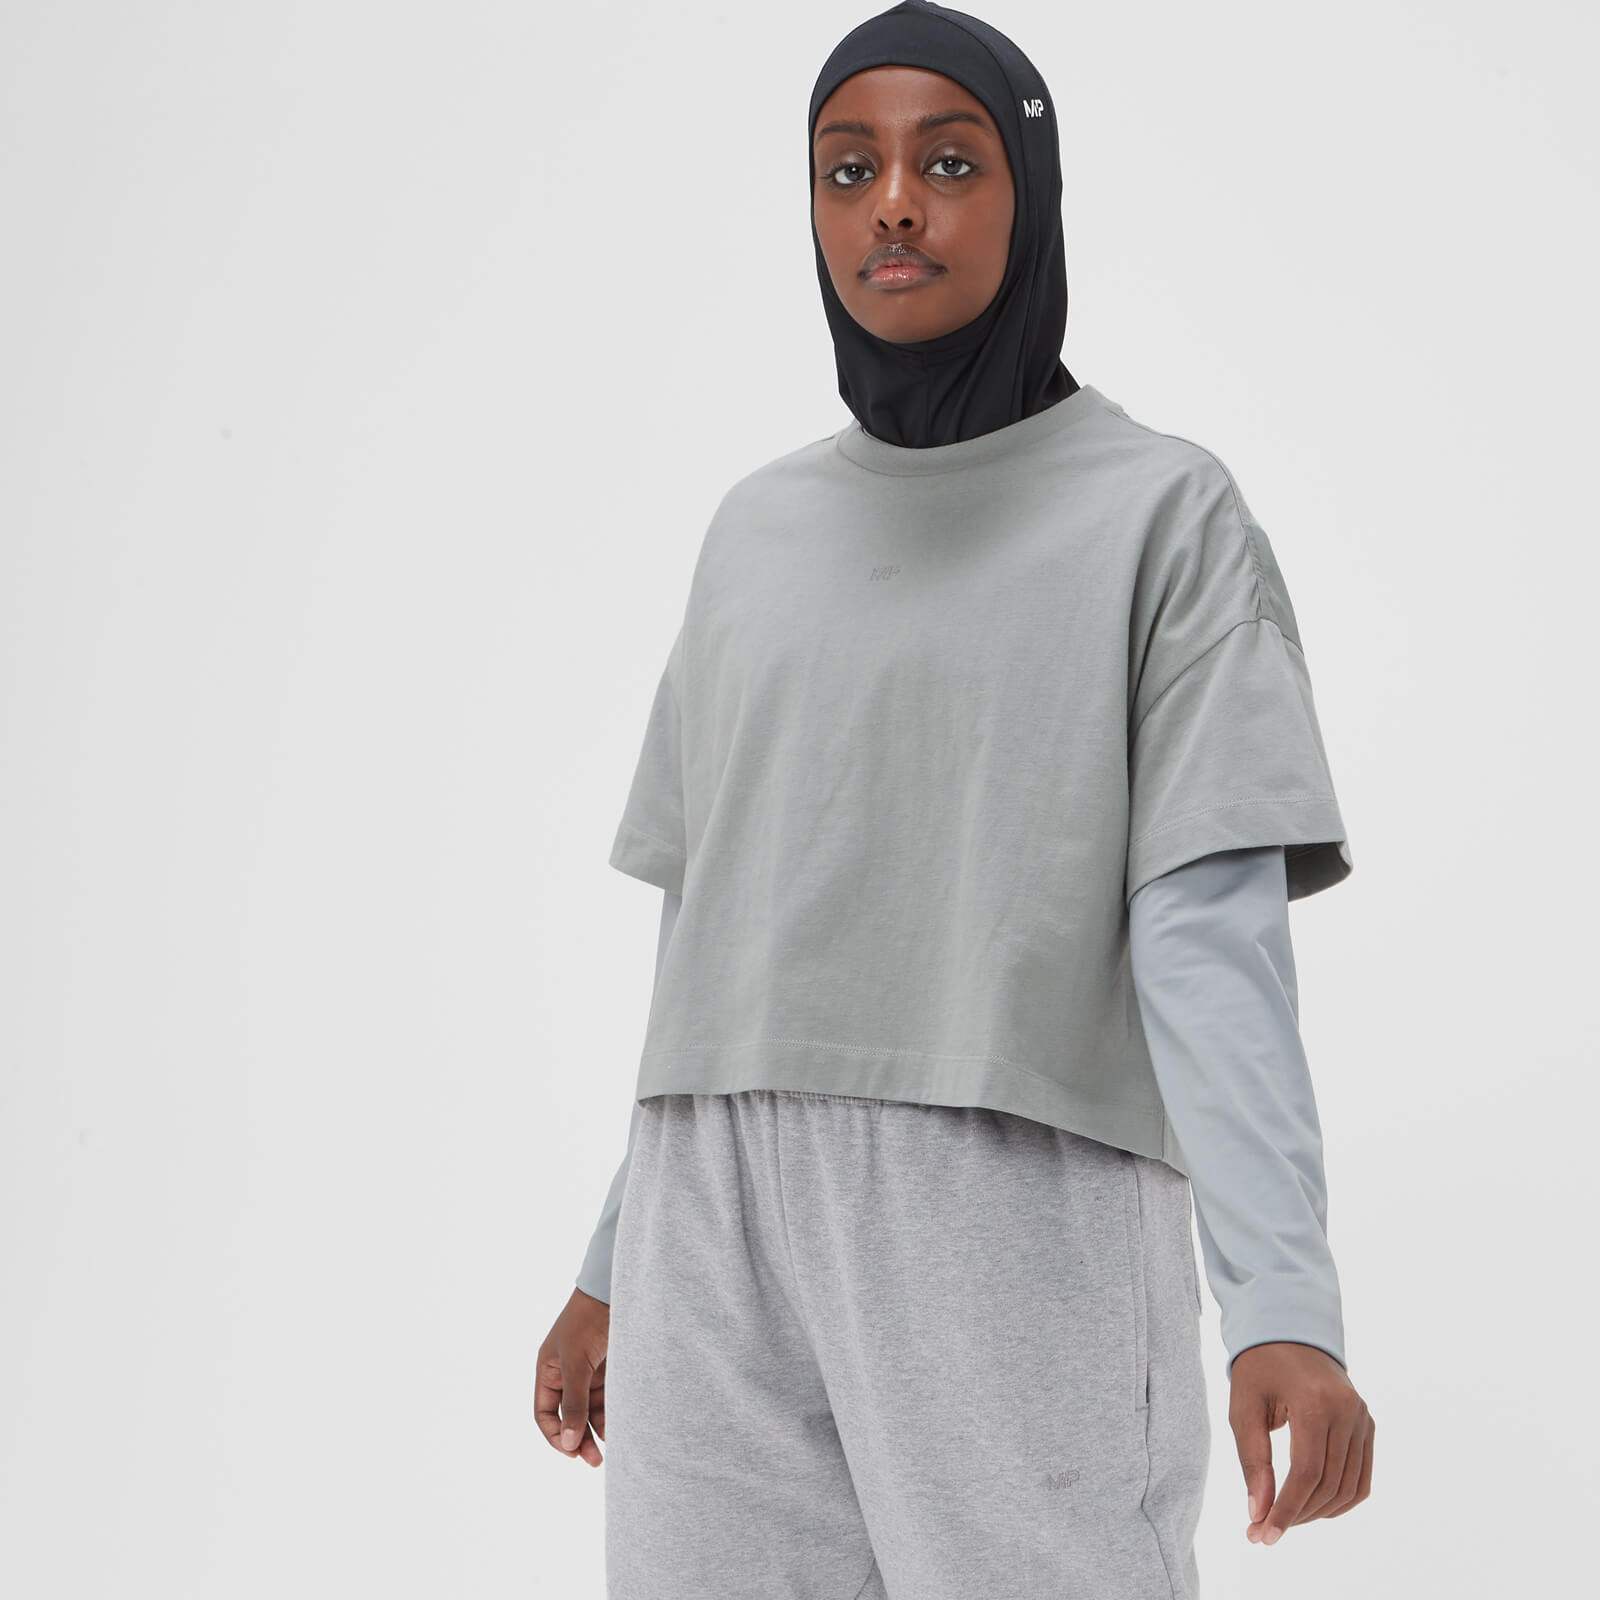 Áo Phông lửng Adapt dành cho Nữ giới của MP - Màu xám nhạt